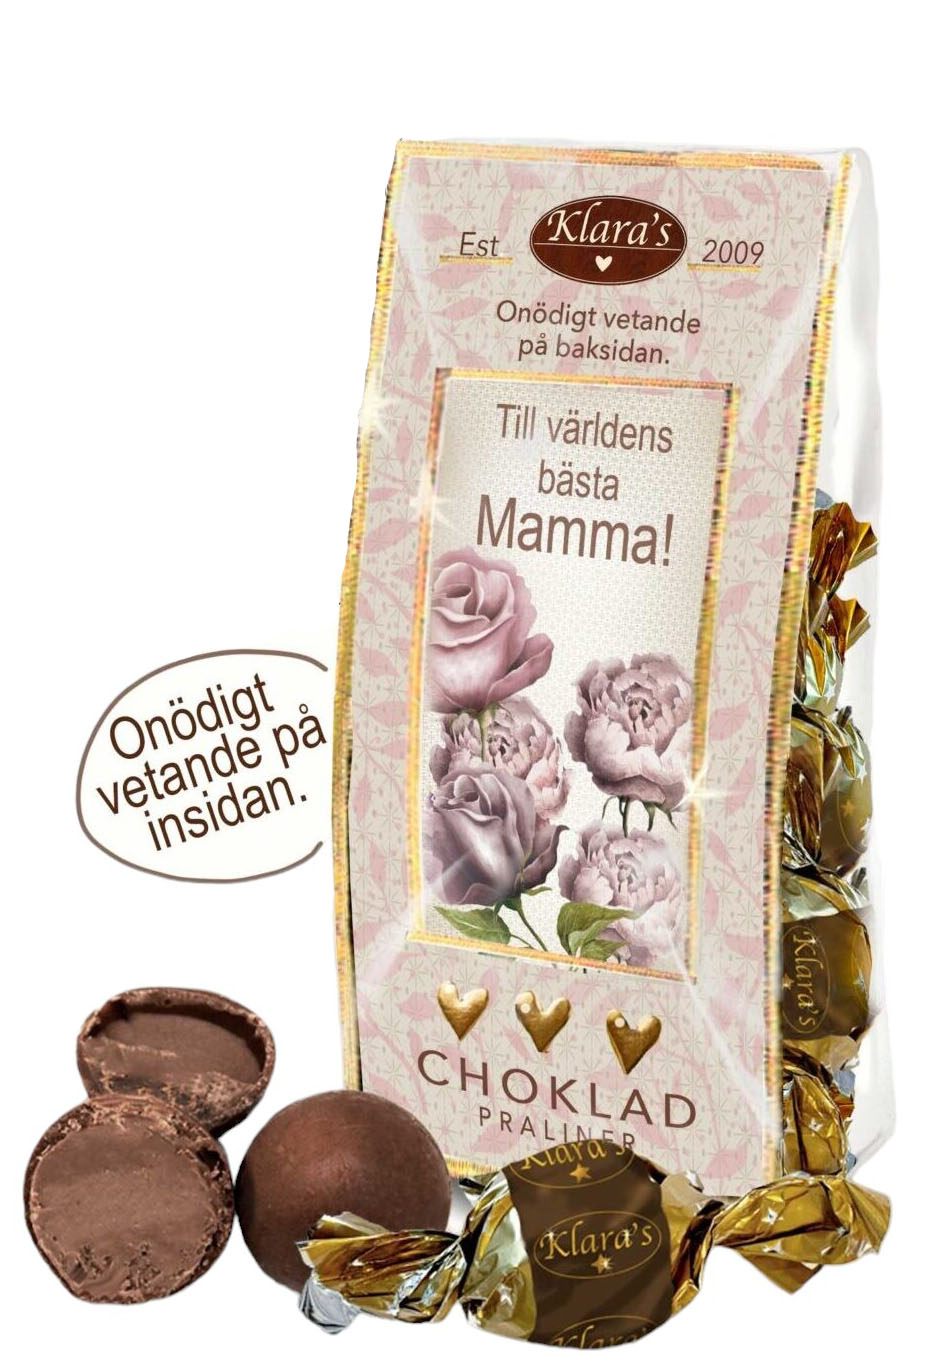 Till Mamma Chokladpraliner - påse med roligt onödigt vetande • Pryloteket